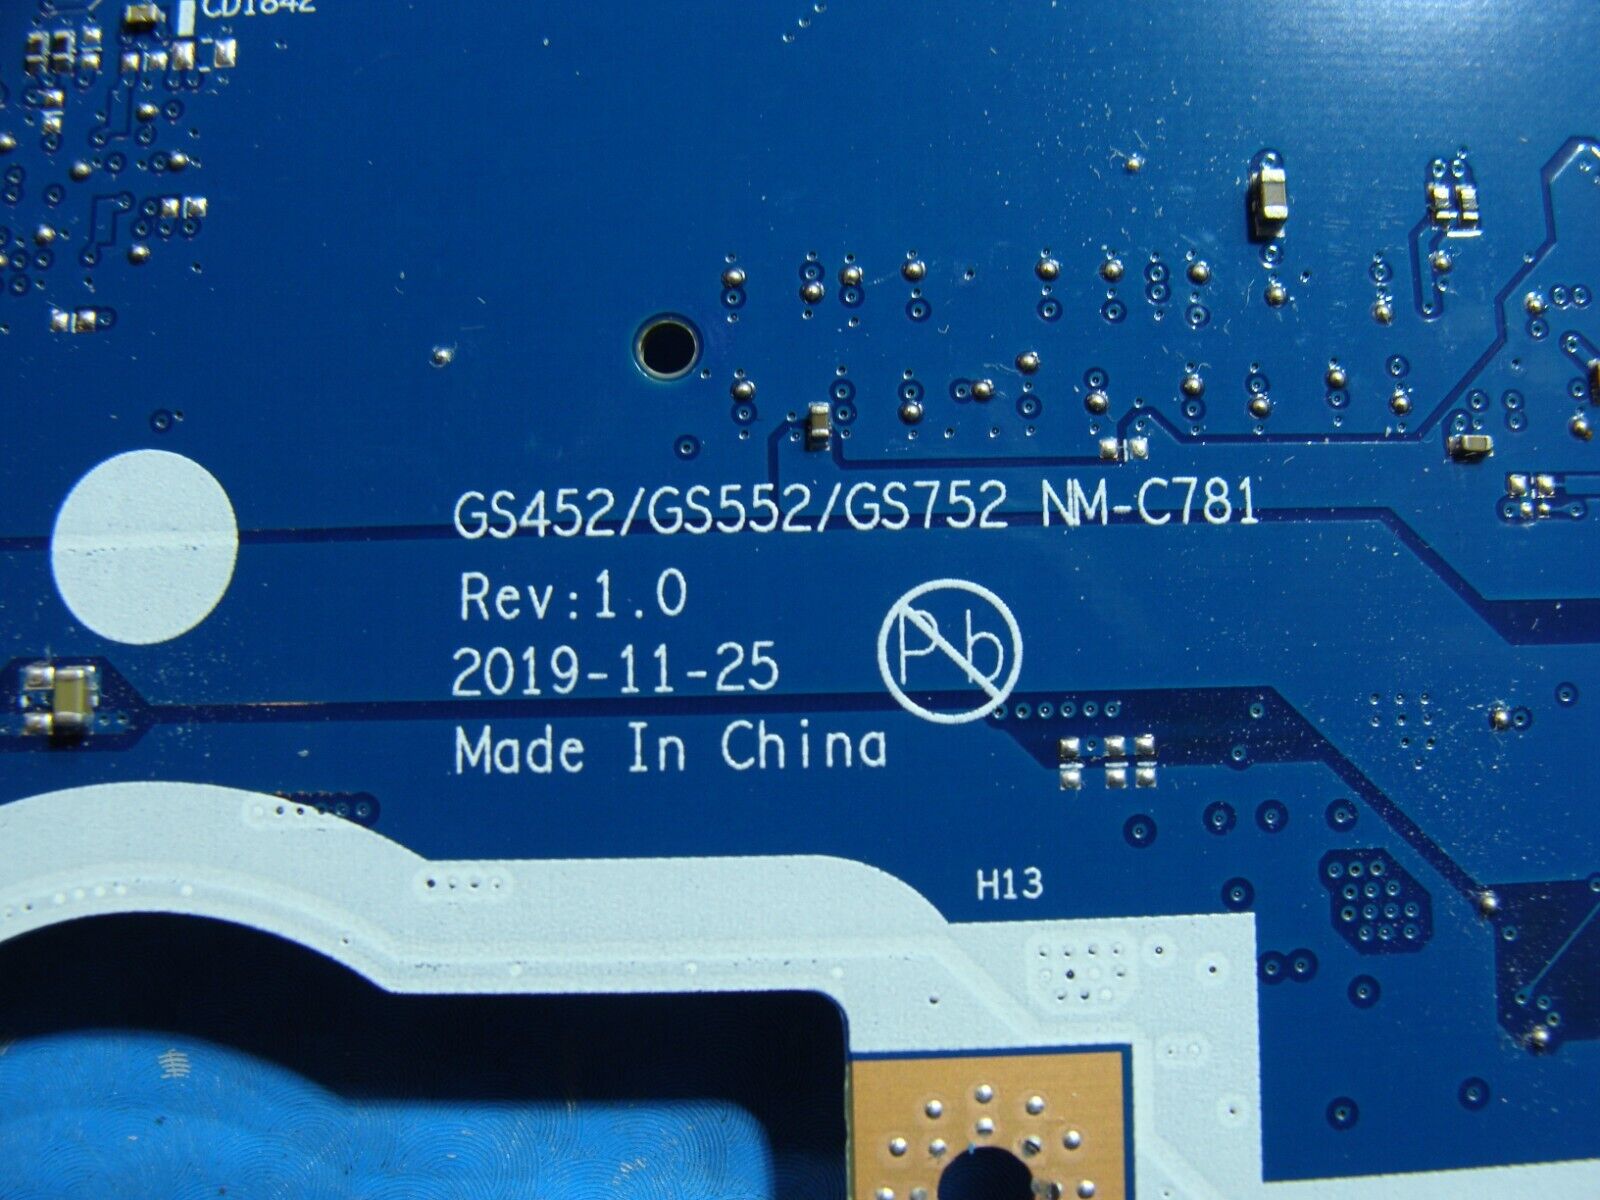 Lenovo IdeaPad 15.6” 3 15IML05 81WR i5-10210U 1.6GHz Motherboard 5B21B48786 ASIS